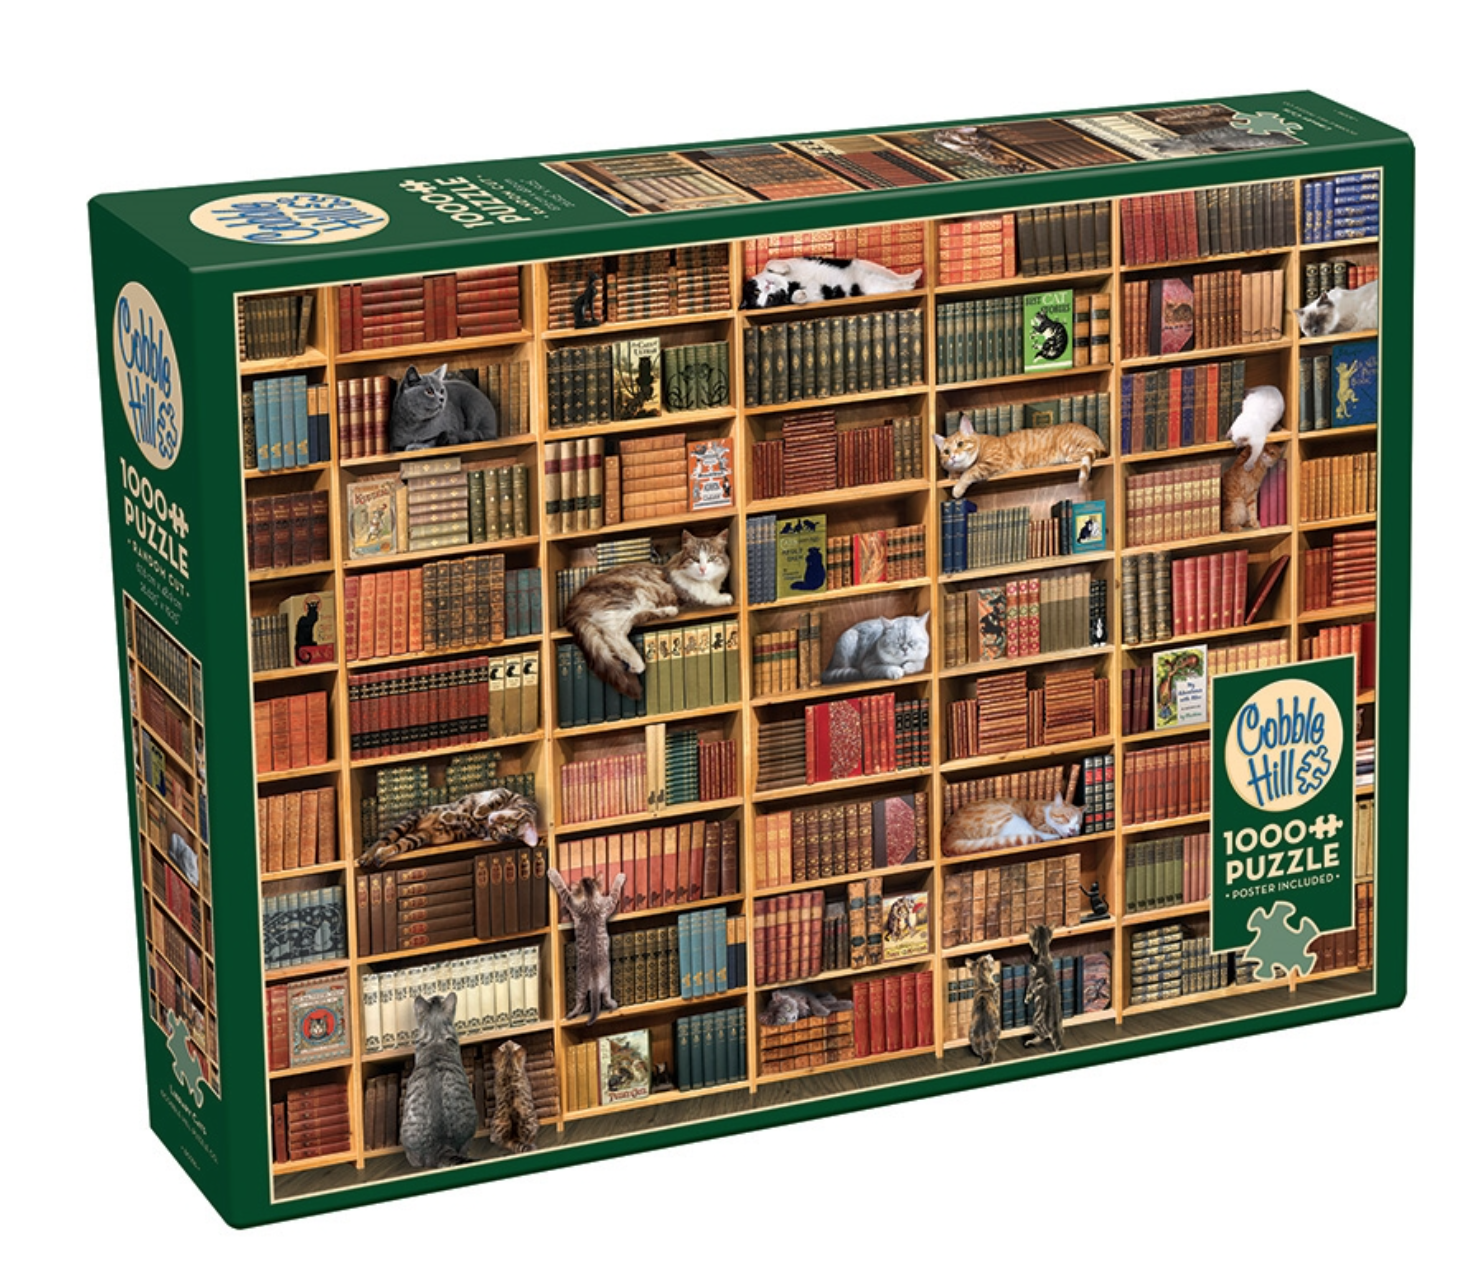 Puzzle 1000 pcs - Bibliothèque